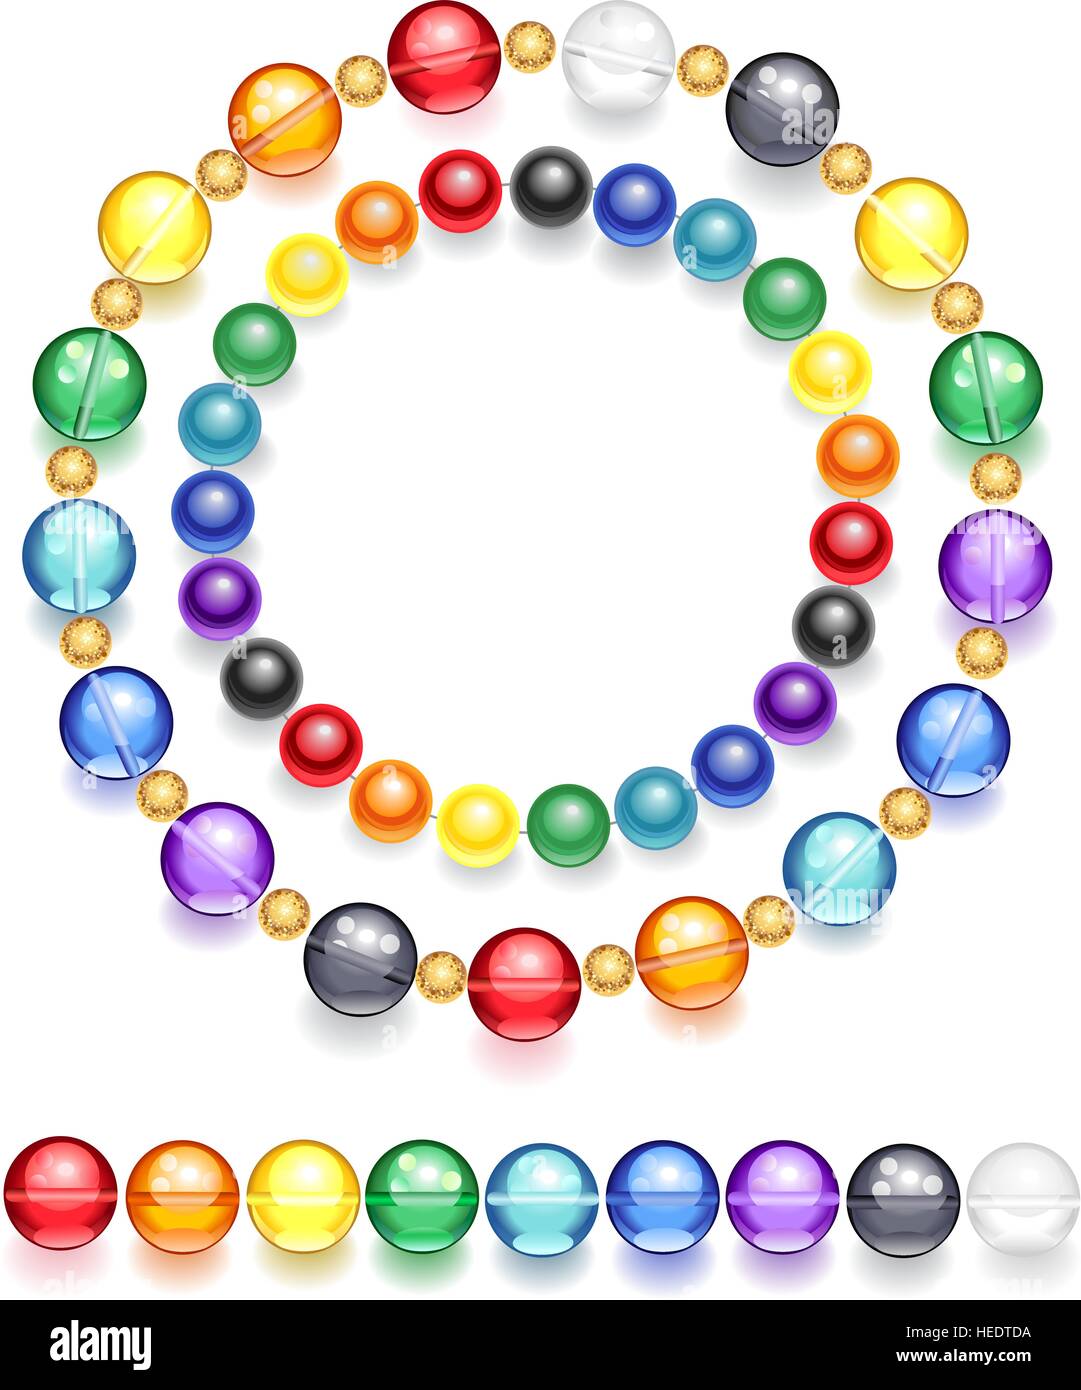 Deux colliers de perles transparents et opaques, faites de verre de couleur Illustration de Vecteur